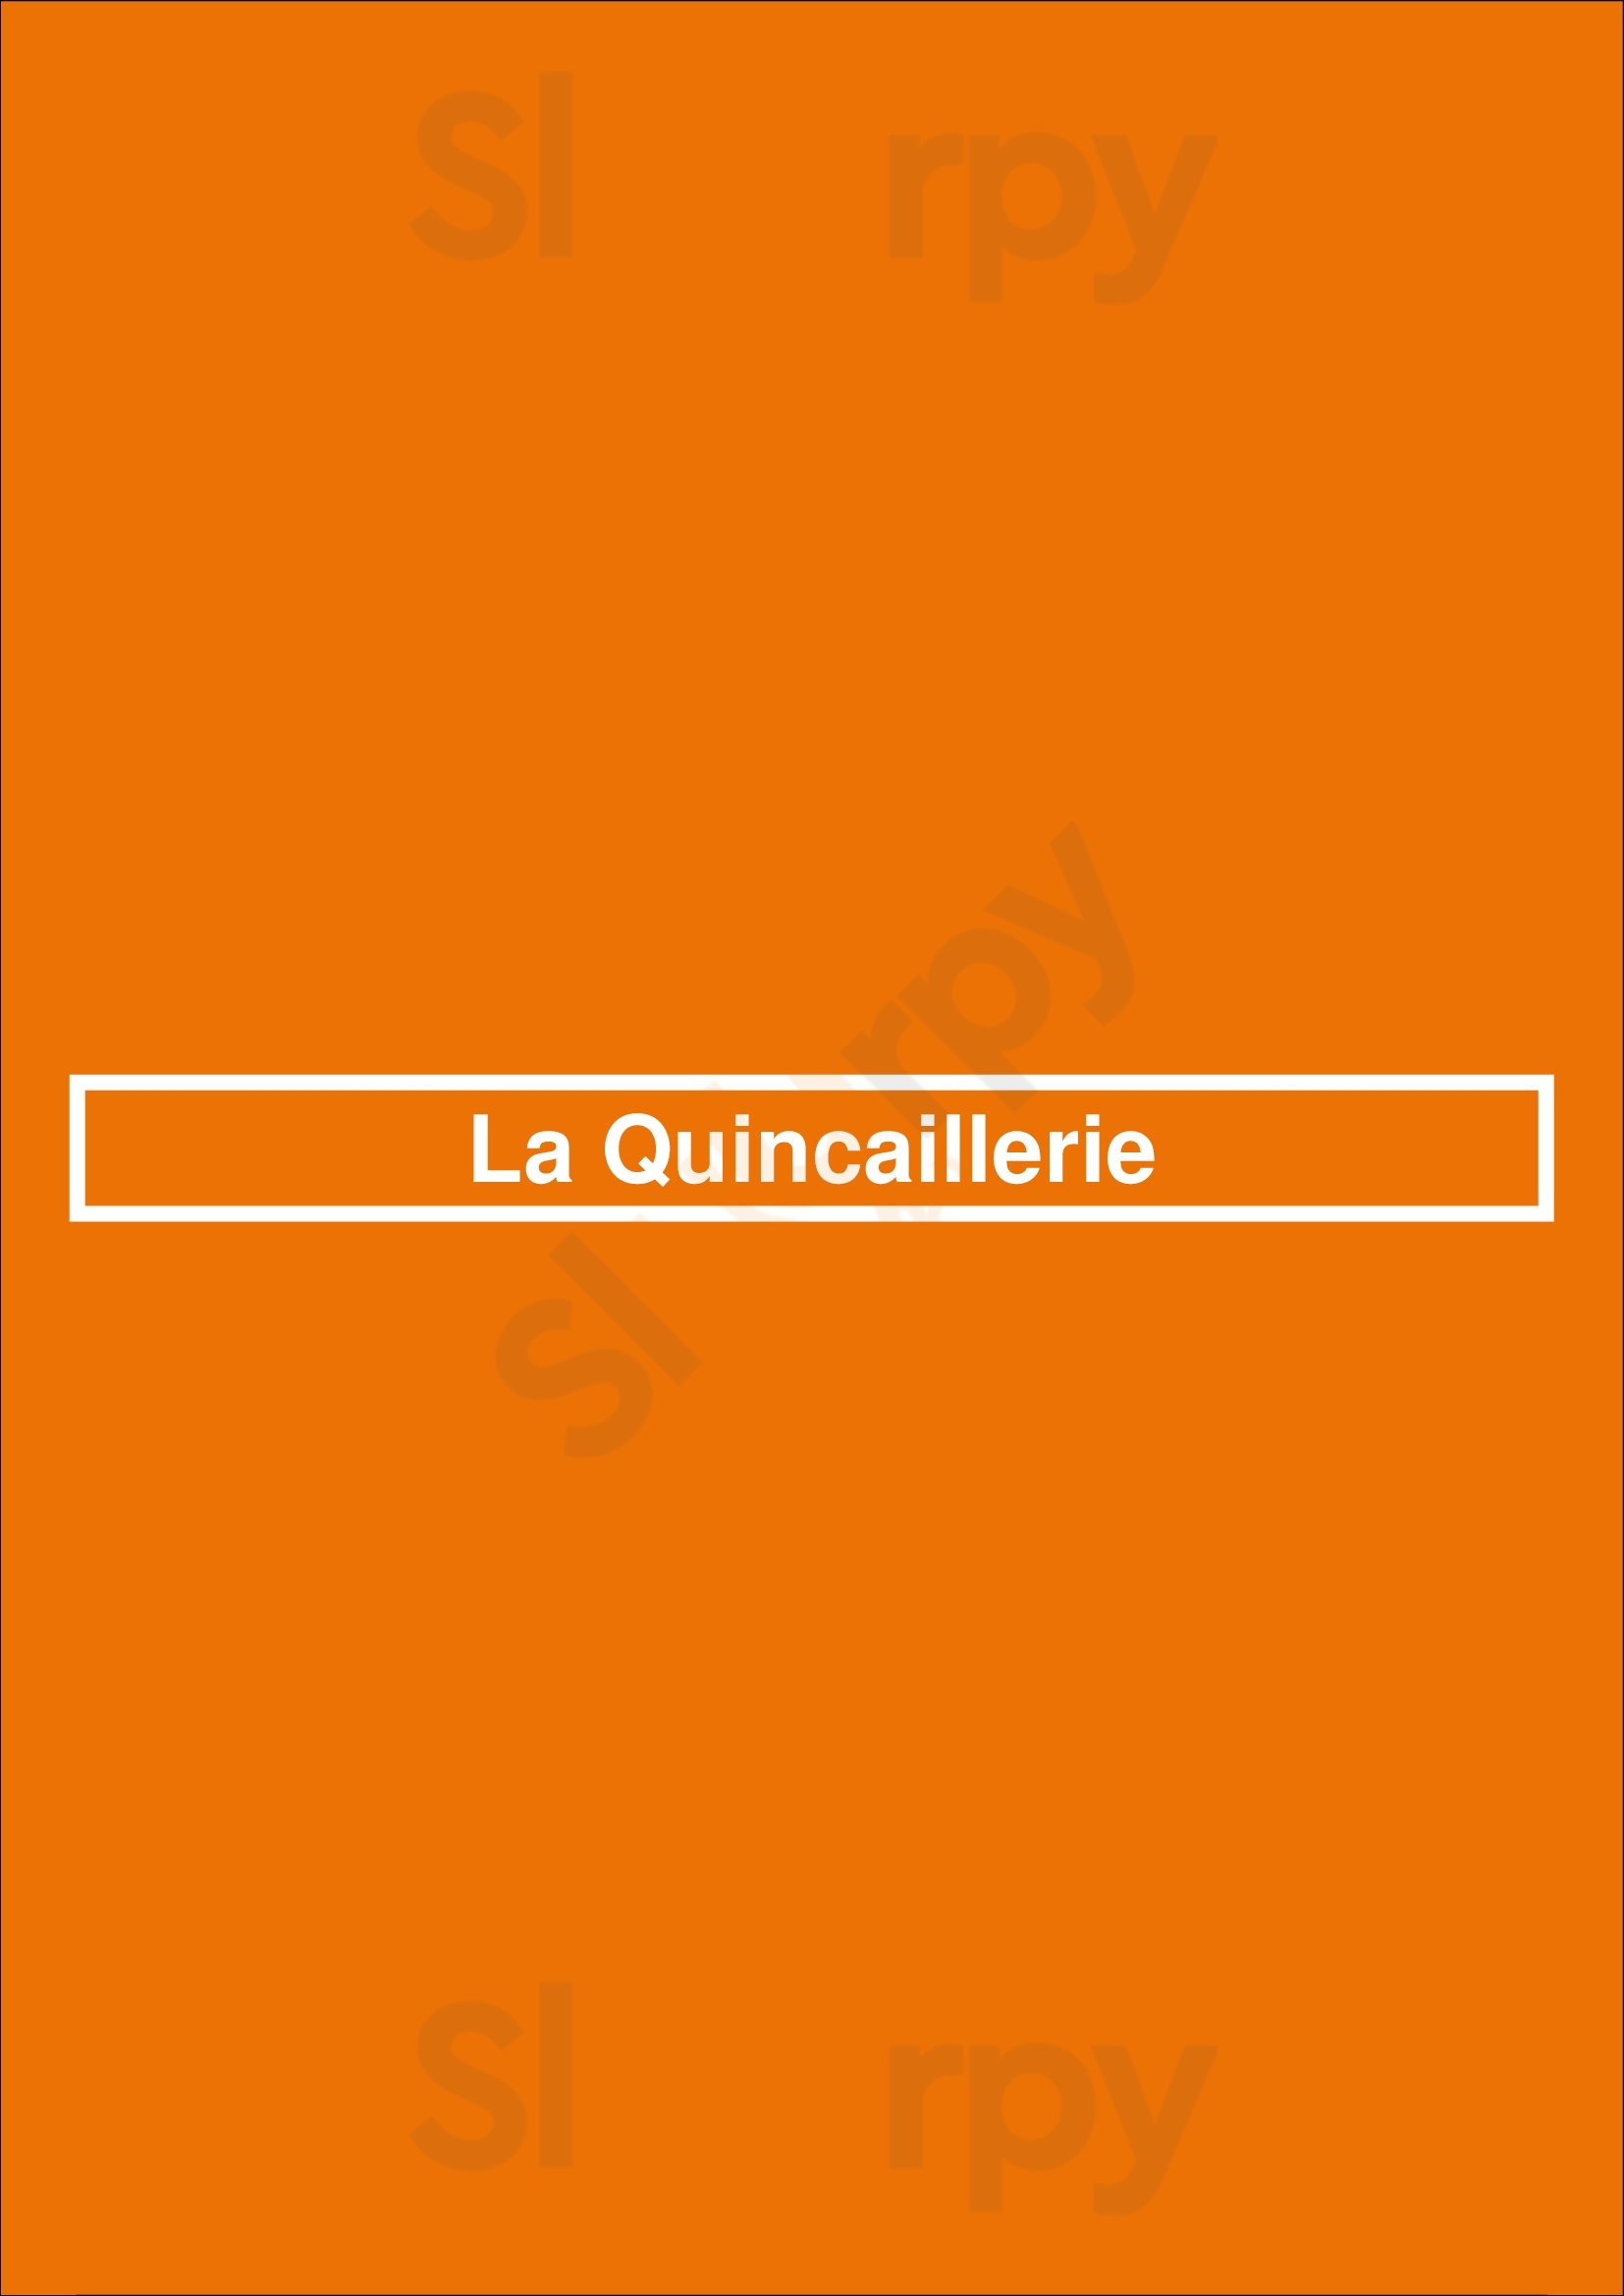 La Quincaillerie Ixelles Menu - 1